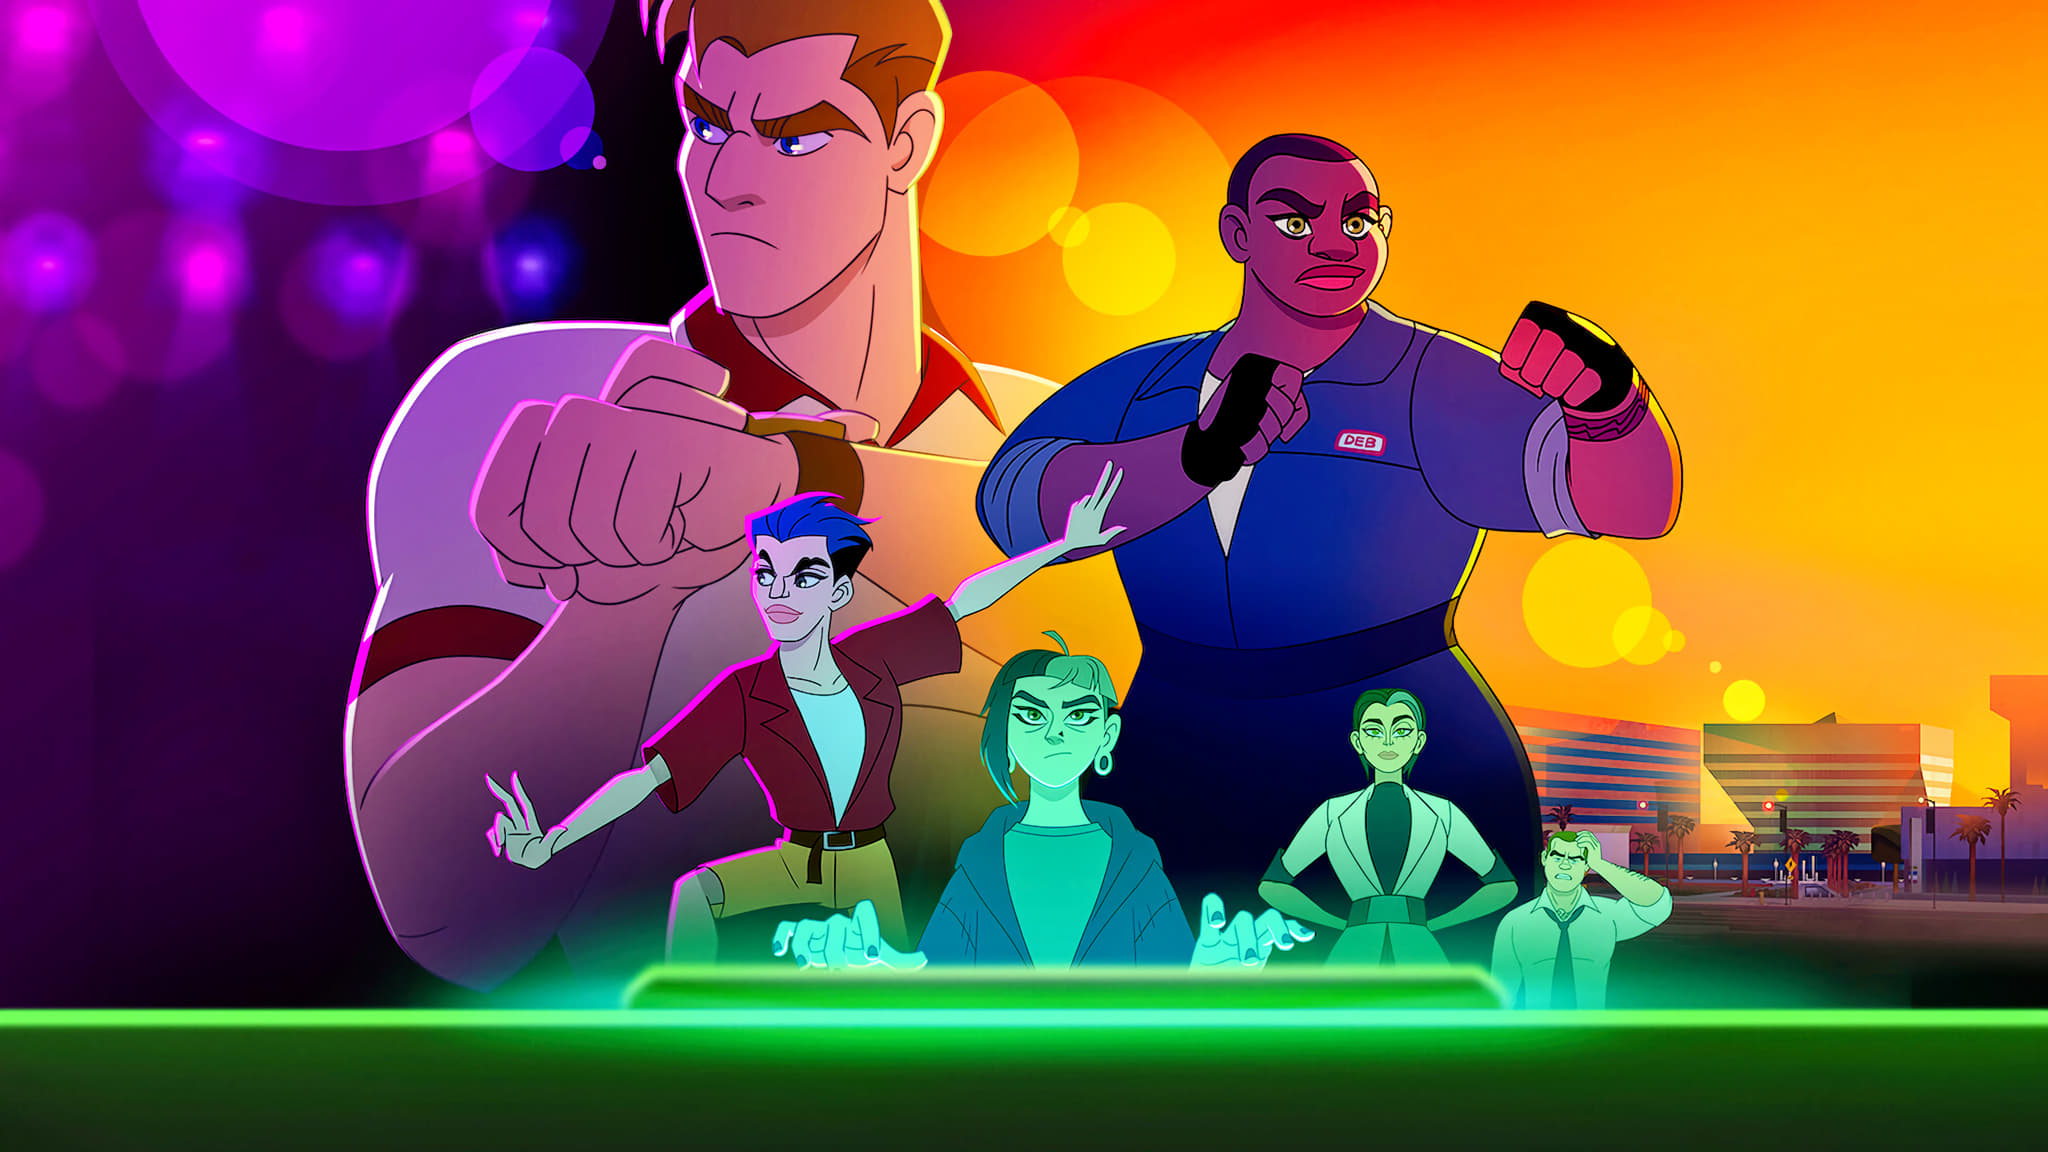 Força-Queer: Conheça a nova animação LGBTQ+ para adultos da